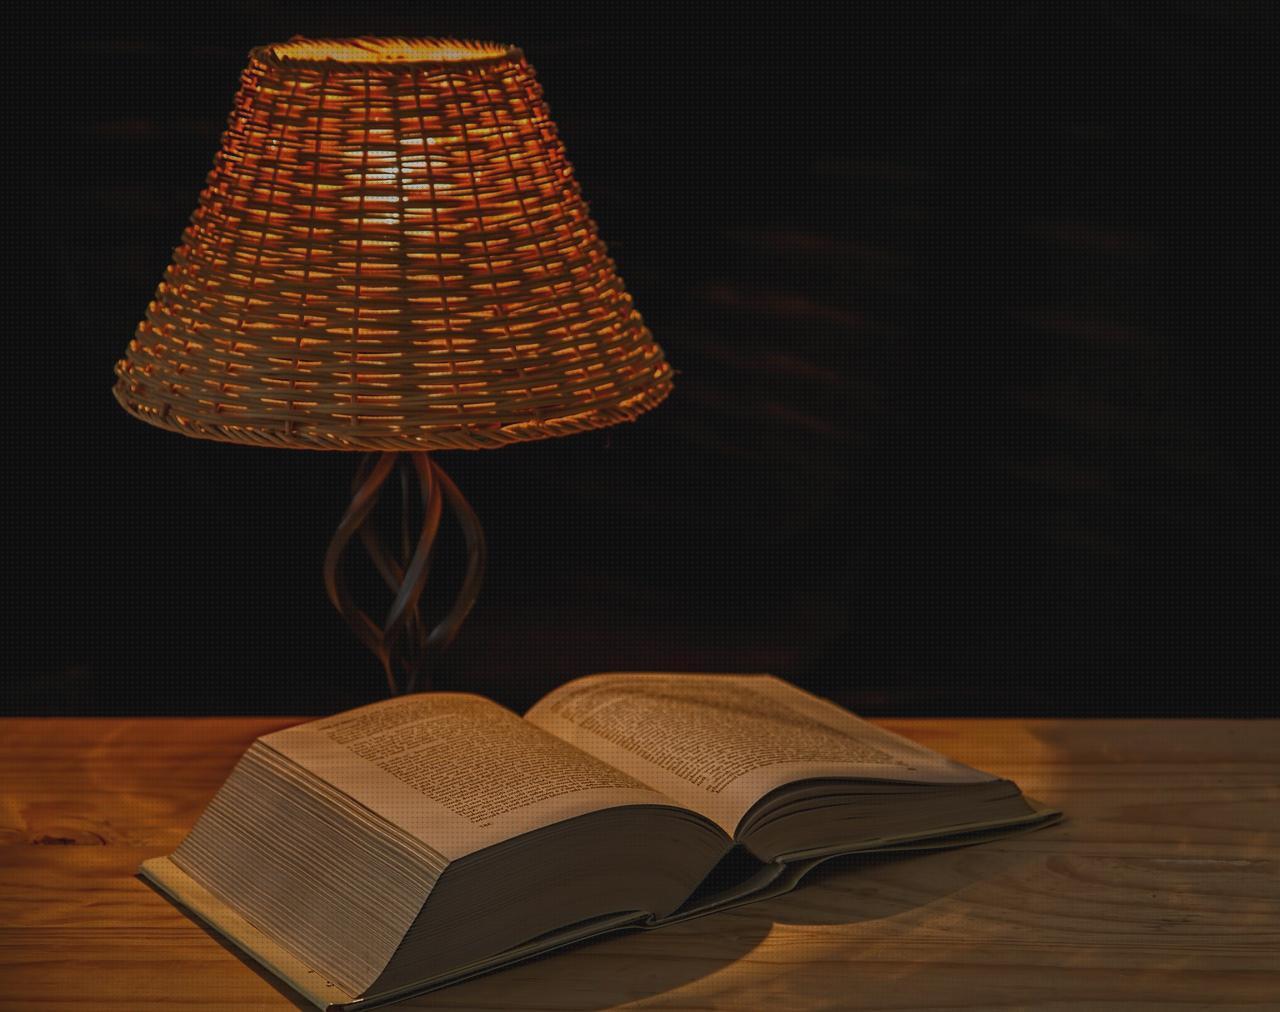 ¿Dónde poder comprar lámpara lectura lampara linterna lampara lectura pinza?